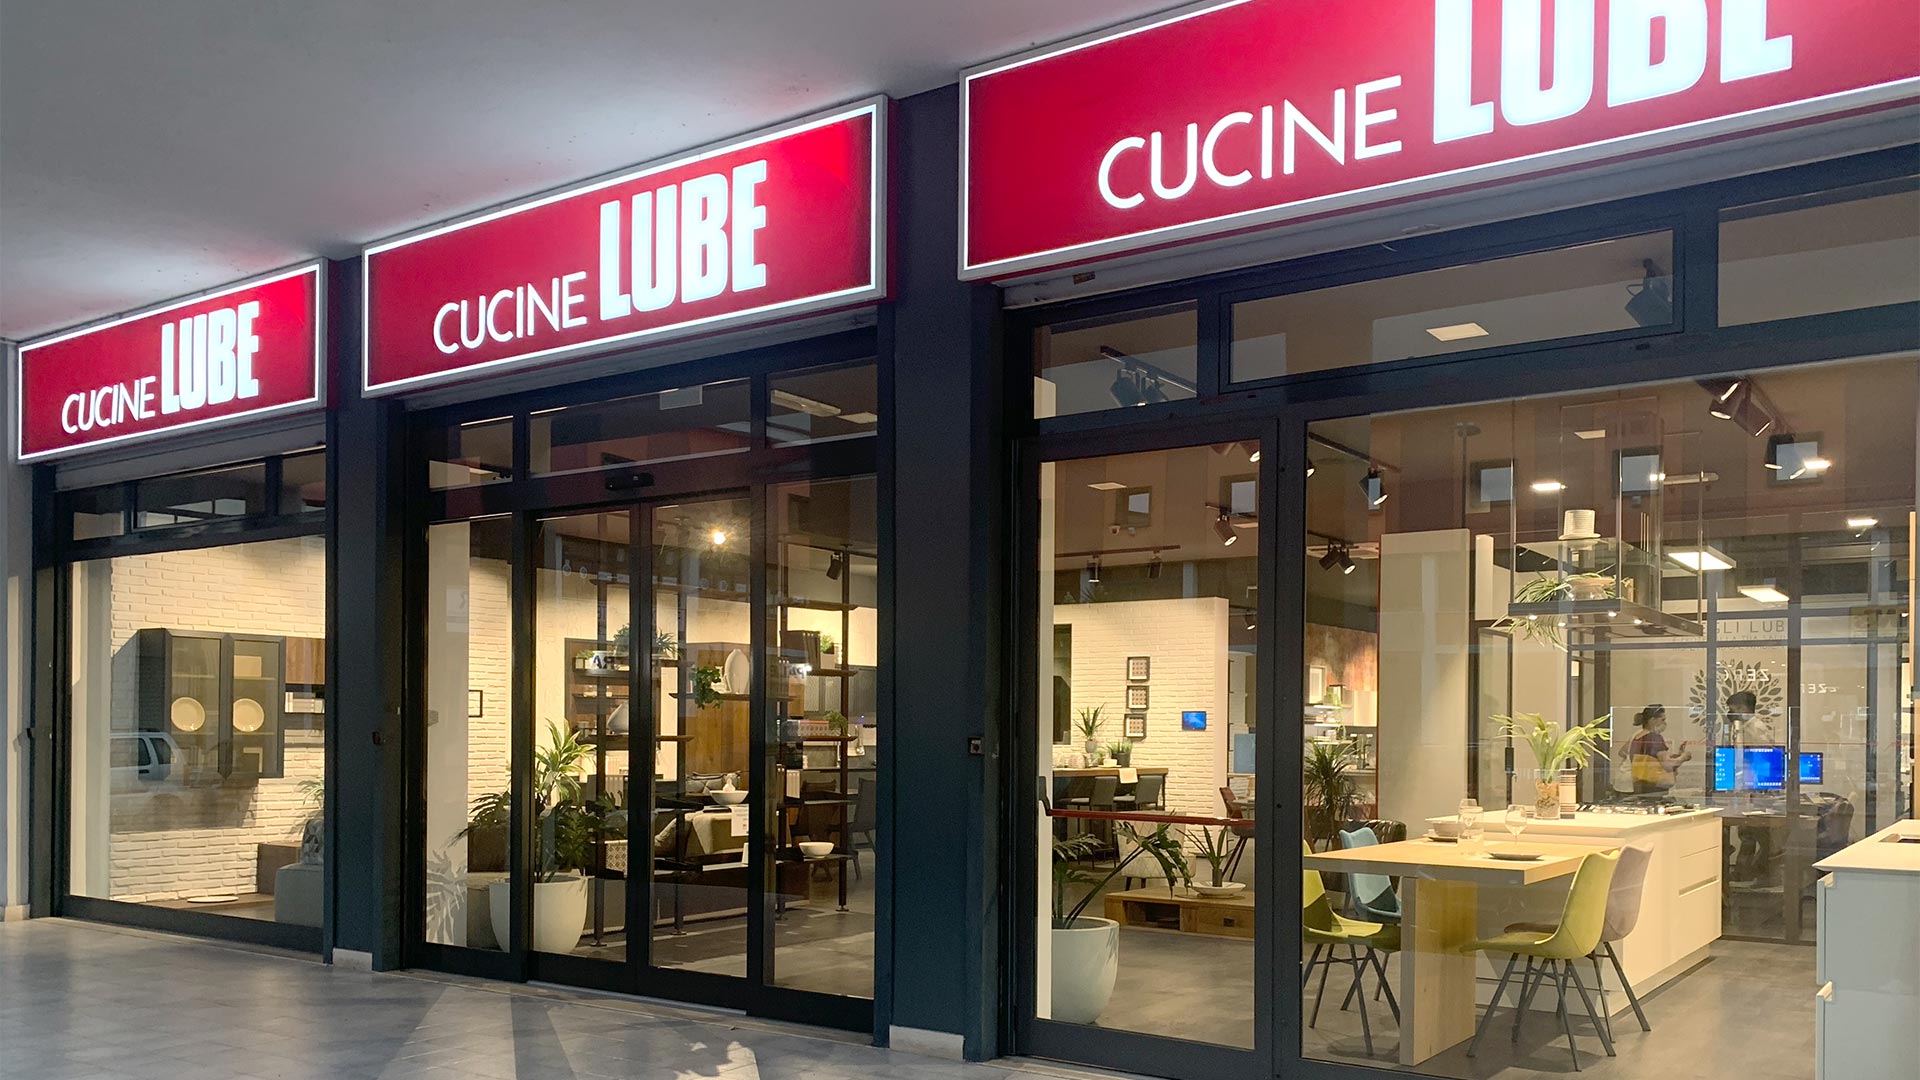 Stanco del solito negozio di cucine?<br>
Affidati a noi! - Home - LUBE CREO Store Guidonia (Roma)